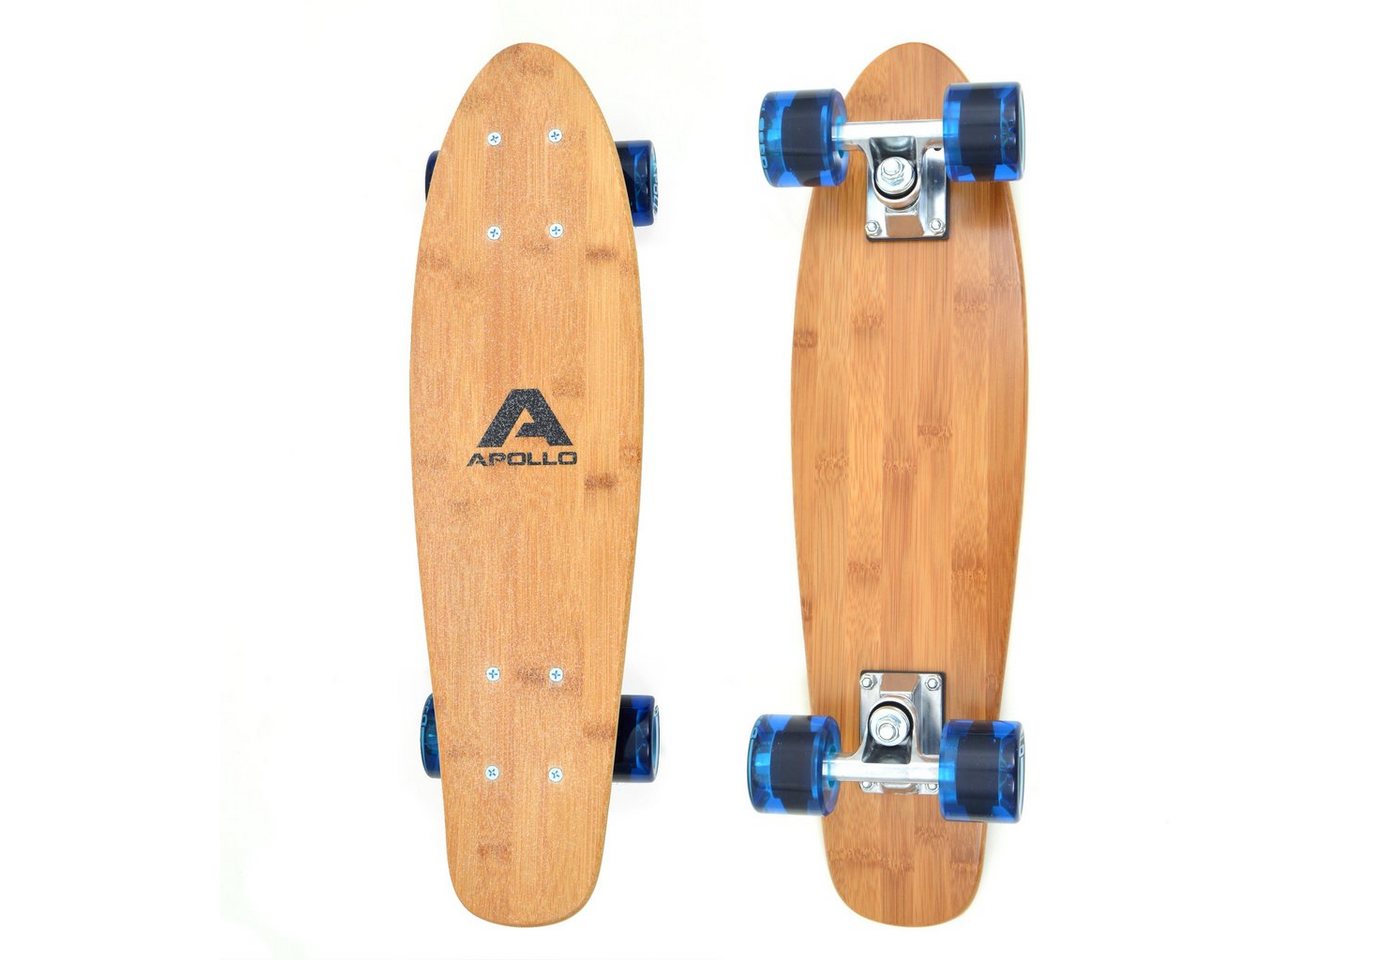 Apollo Miniskateboard Fancyboard Classic Blue 22, kompakt mit hochwertiger Verarbeitung" von Apollo